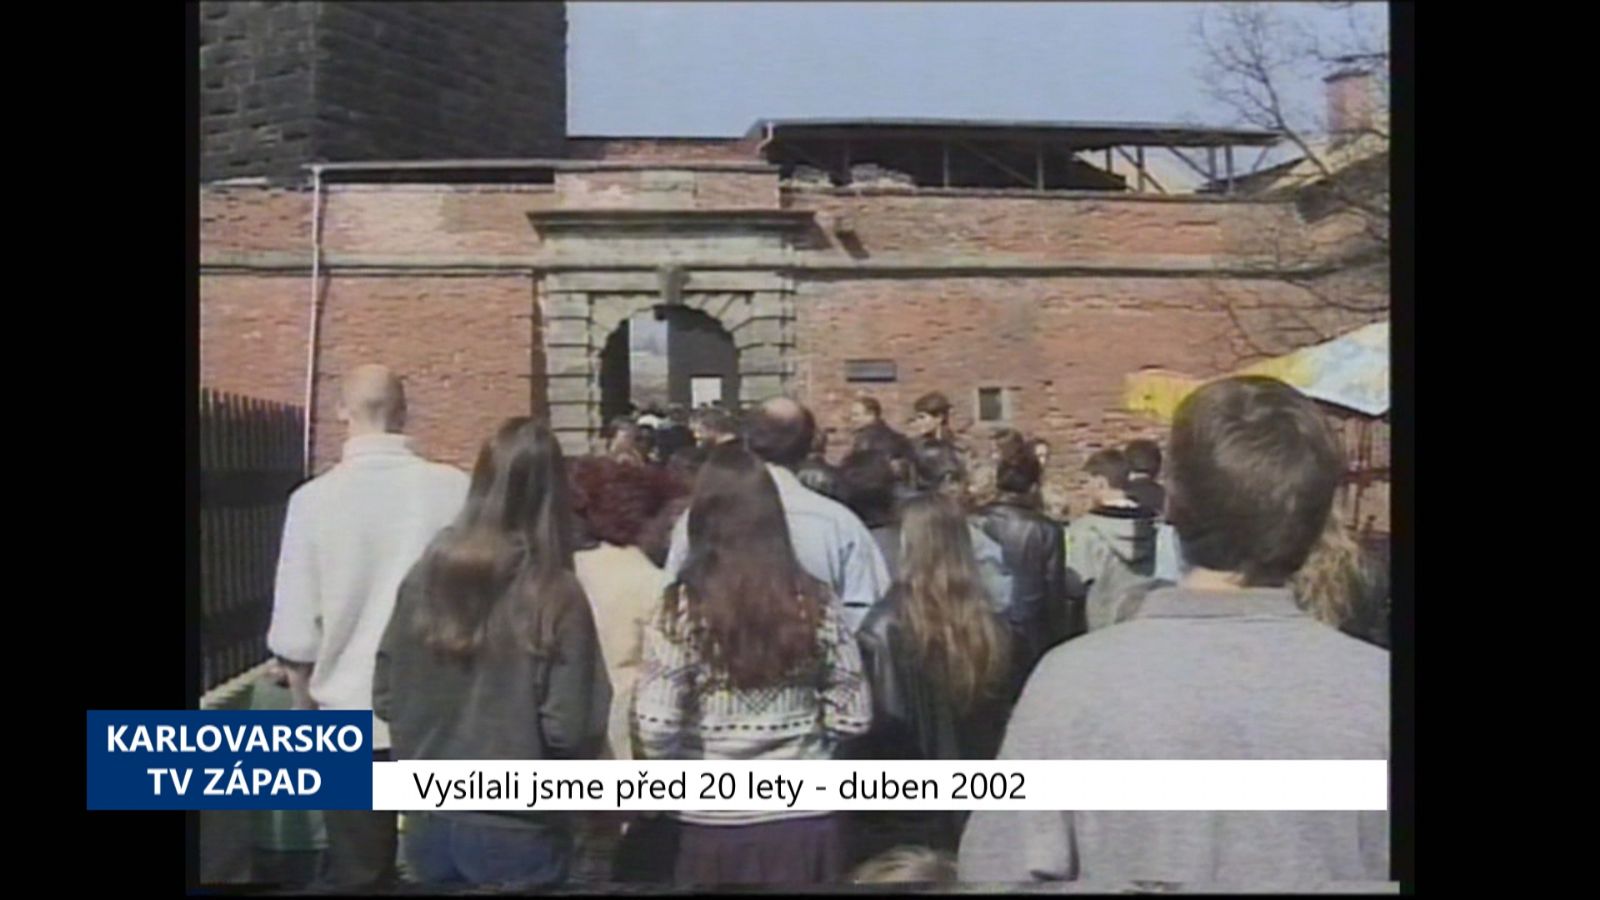 2002 – Cheb: Hrad zahájil sezonu, jedná se o zakrytí paláce (TV Západ)